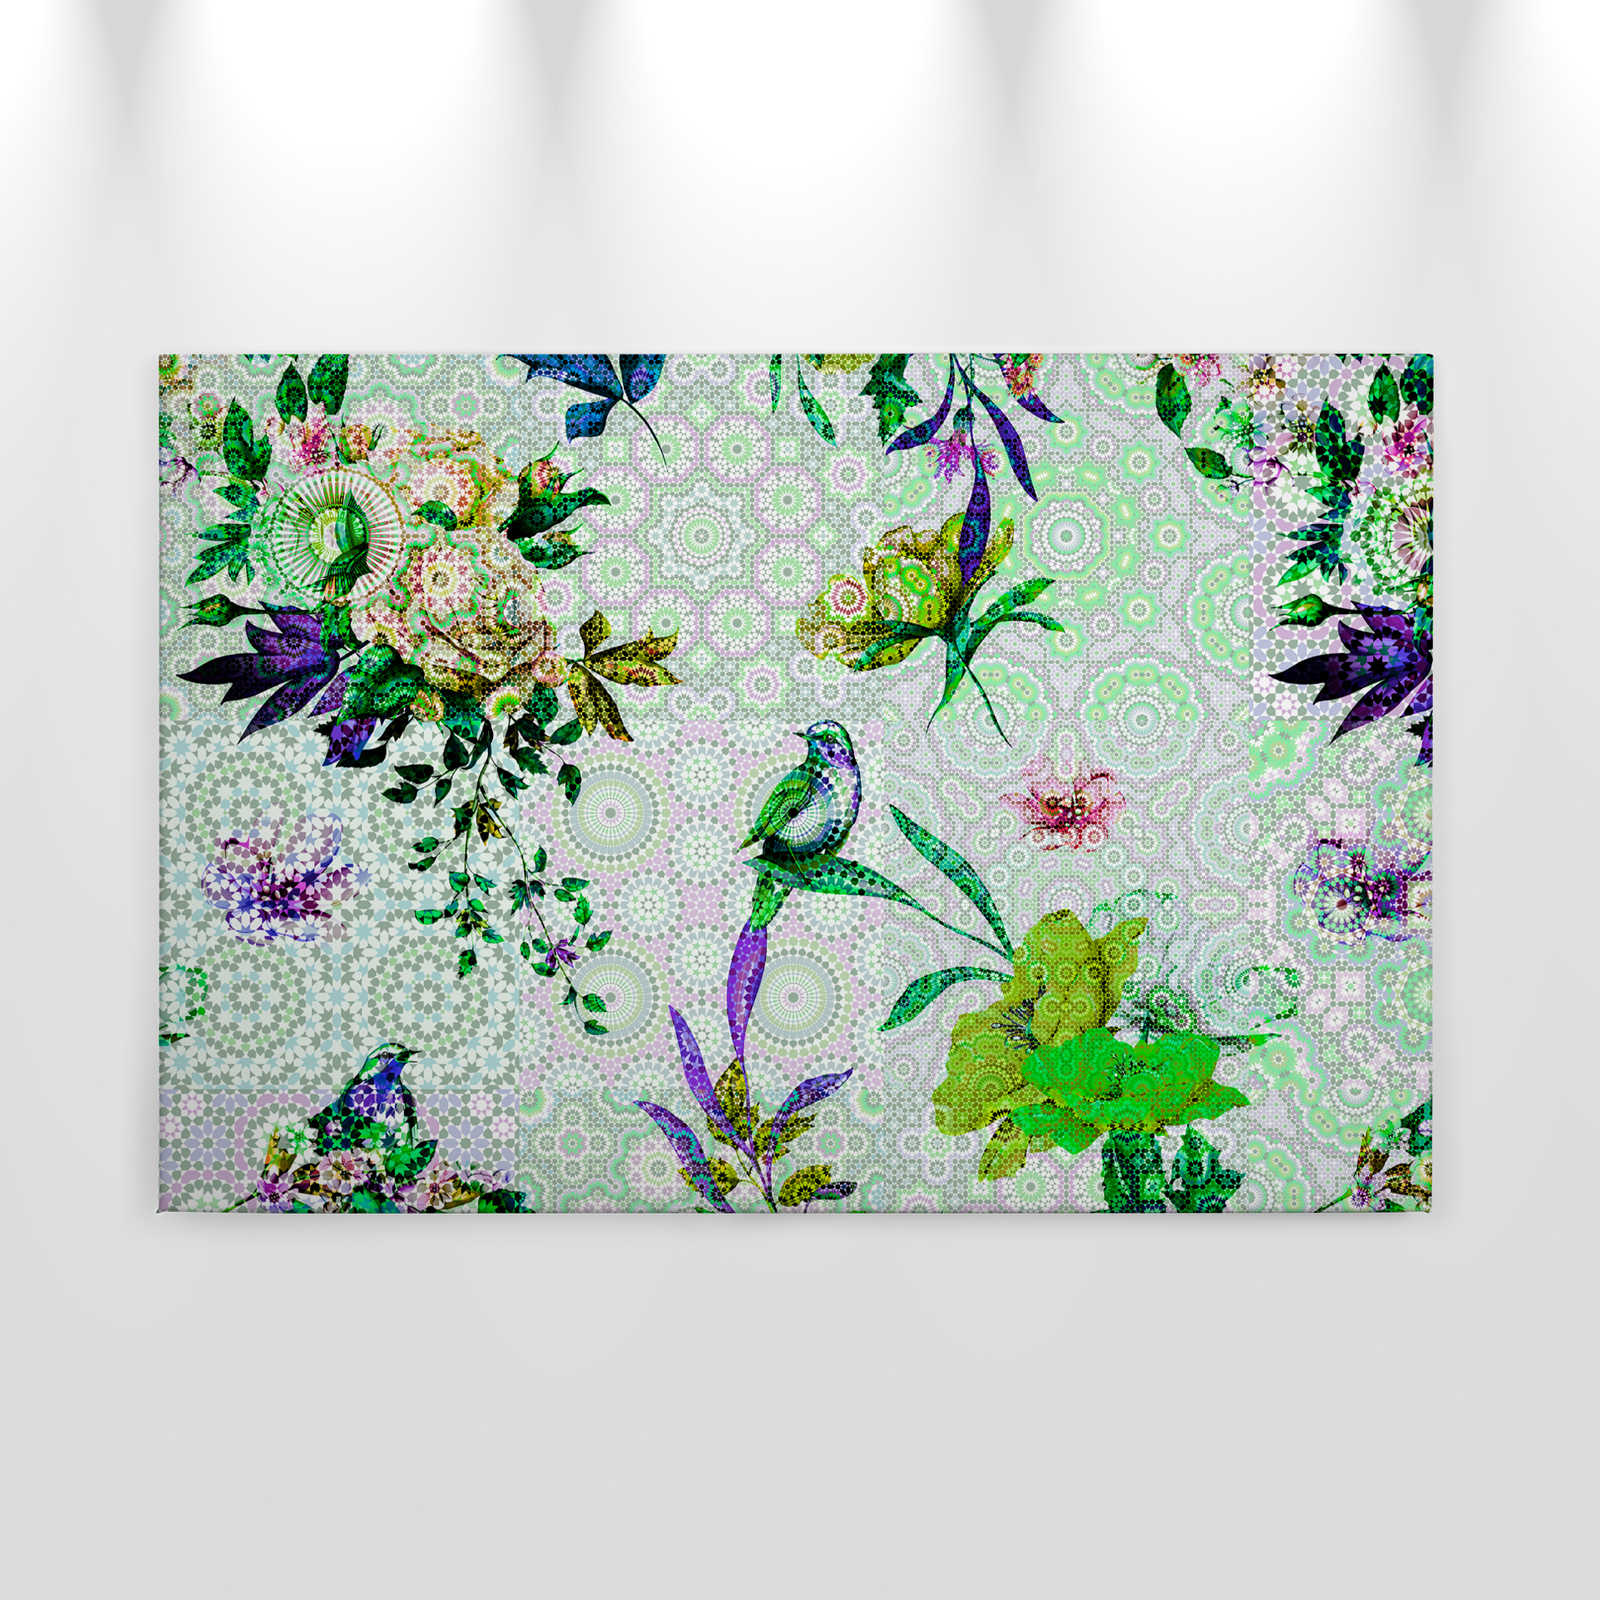             Cuadro en lienzo Flores con diseño de mosaico moderno - 0,90 m x 0,60 m
        